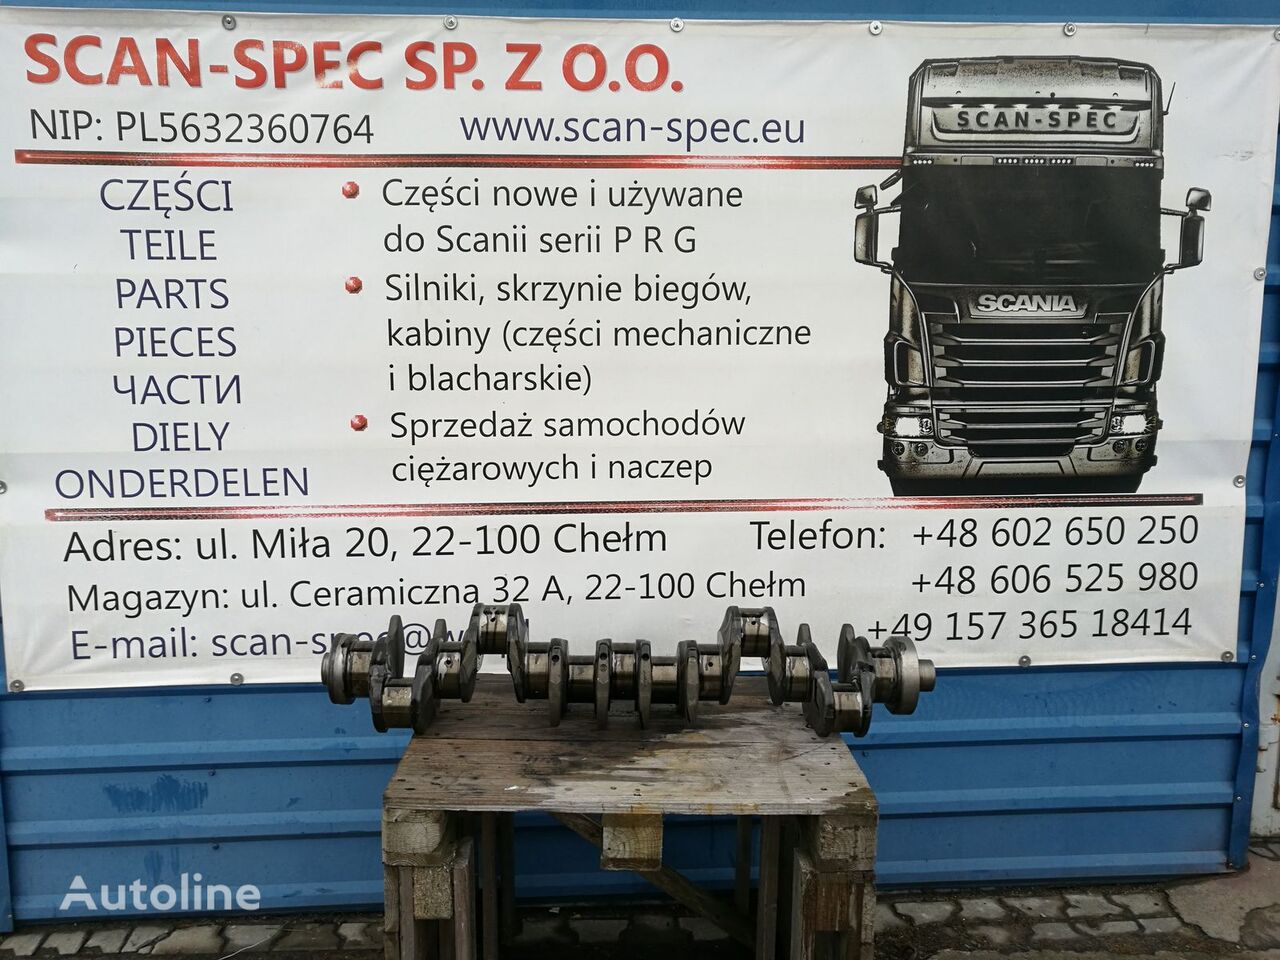 vilebrequin Scania XPI 2008030,2133515 pour tracteur routier Scania PRG